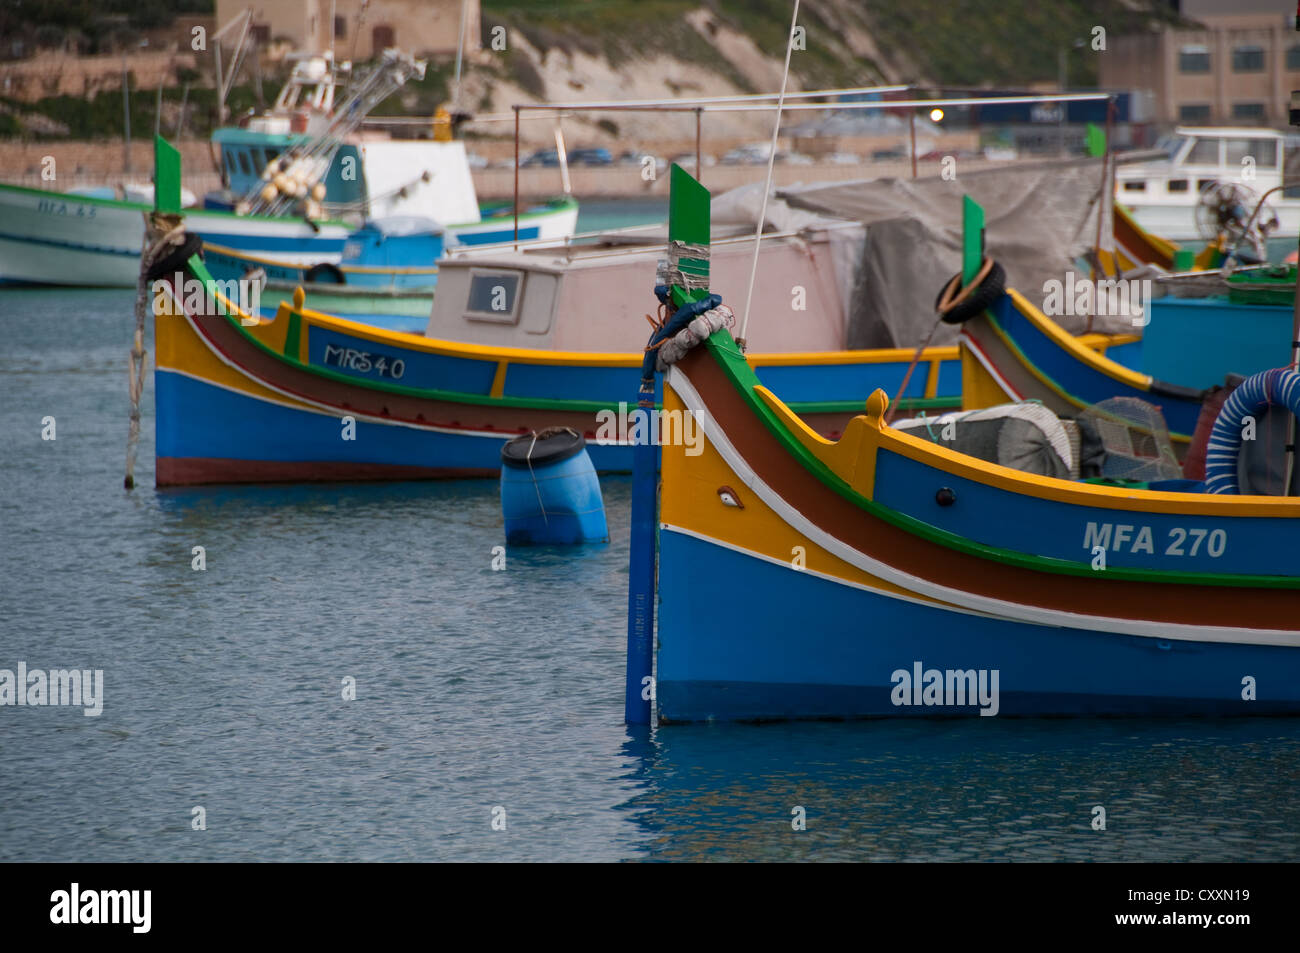 Tradizionale Maltese luzzu "' barche da pesca con l'occhio di Osiride per consentire allontanare gli spiriti maligni. Marsazlokk Bay, Malta Foto Stock